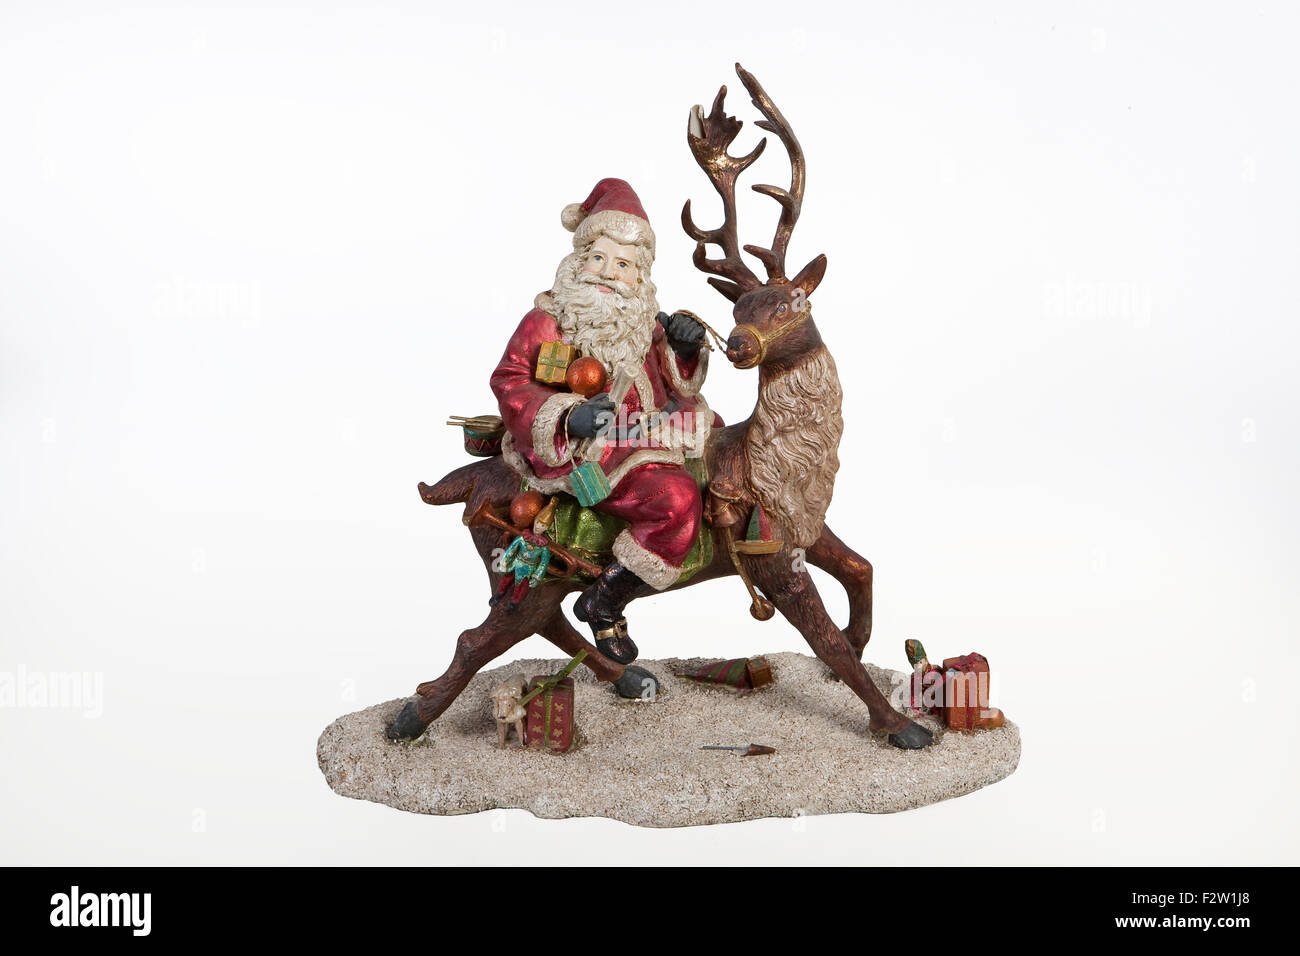 Santa Klaus ciervos aislados de renos toy macro cierra una estatuilla escultura juega el juego de Navidad xmas fest celebración de Año Nuevo Foto de stock